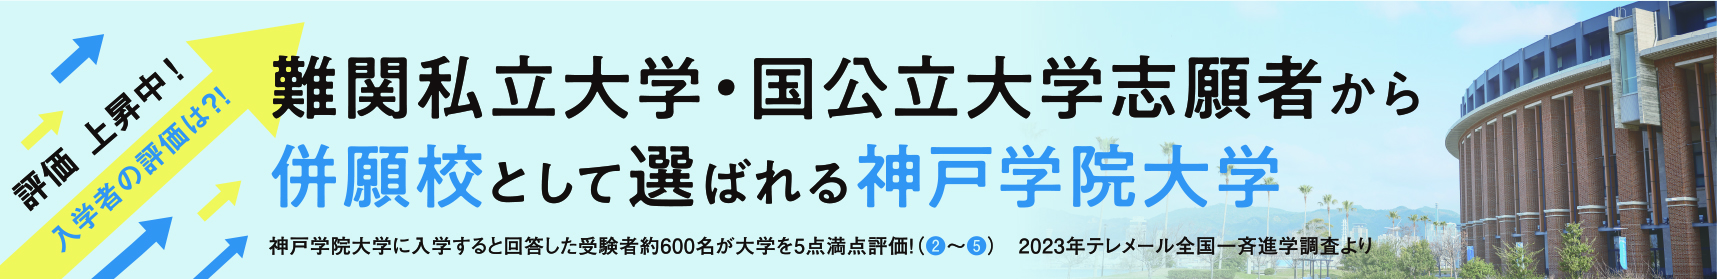 難関私立大学・国公立大学志願者から併願校として選ばれる神戸学院大学